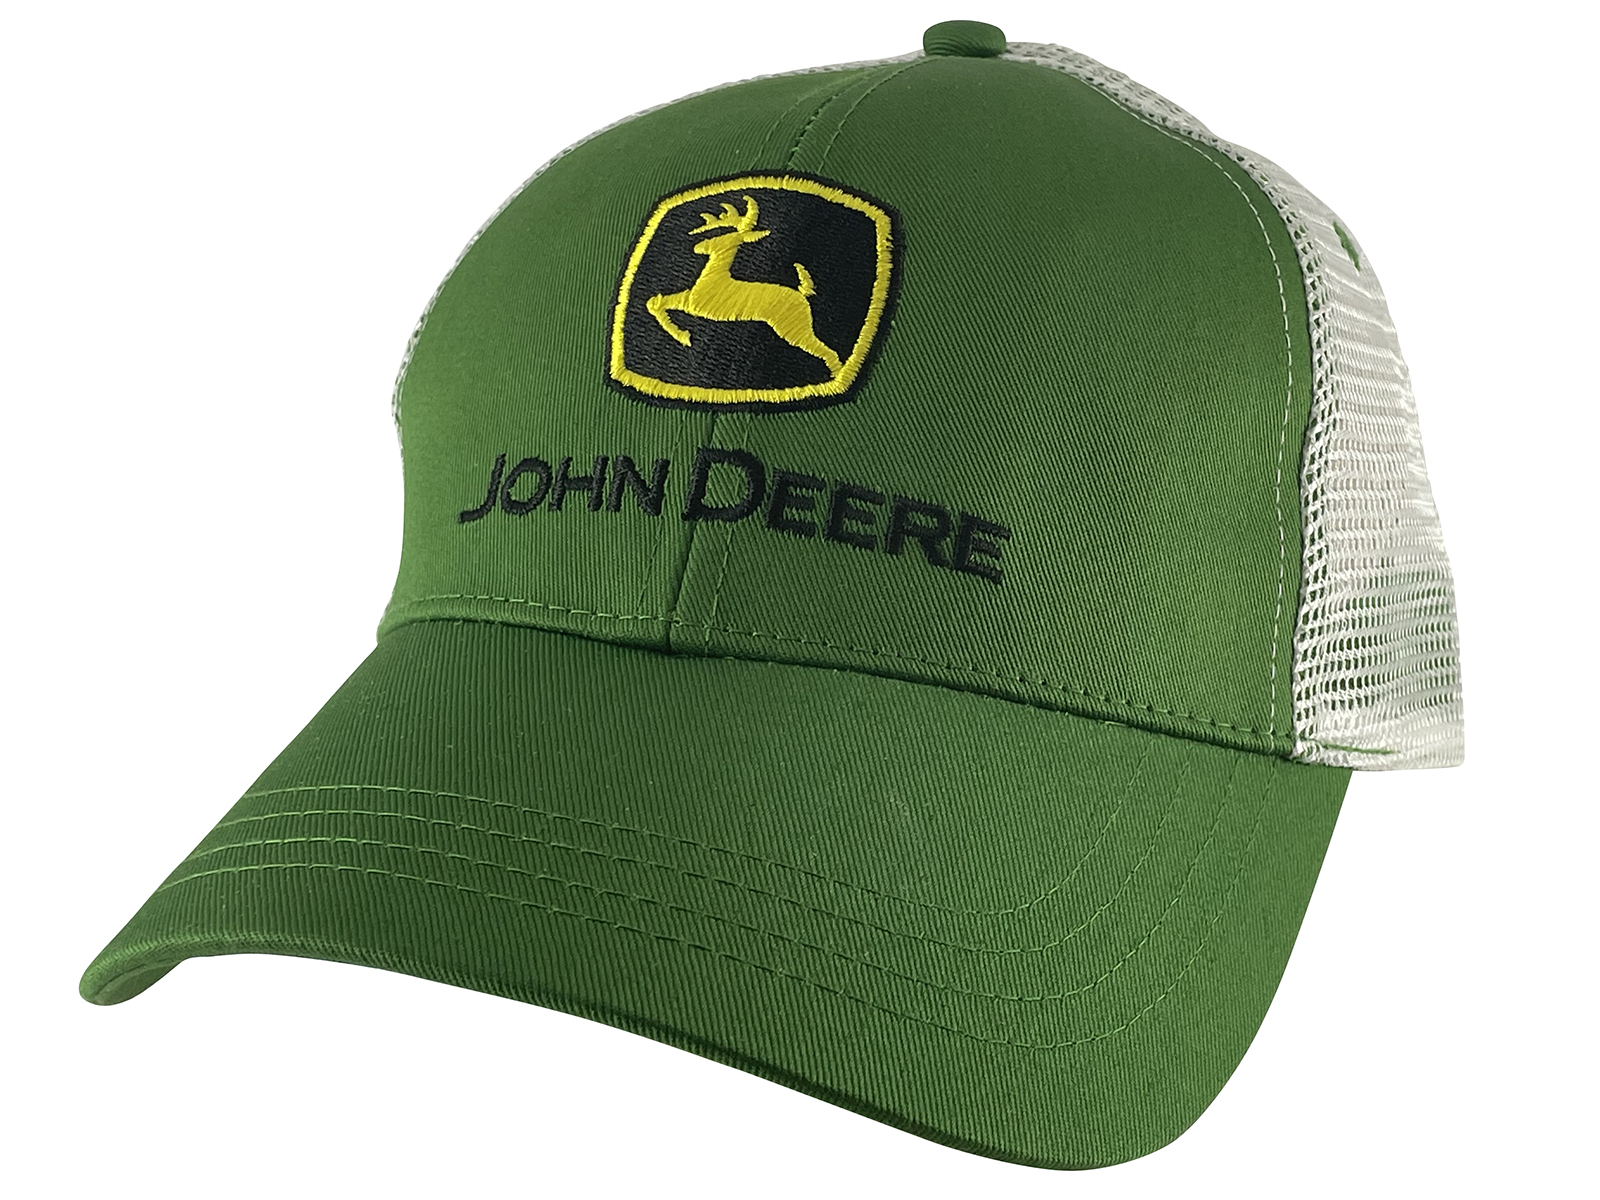 JD John Deere Adjustable Trucker Mesh Strap Hat, Green/White